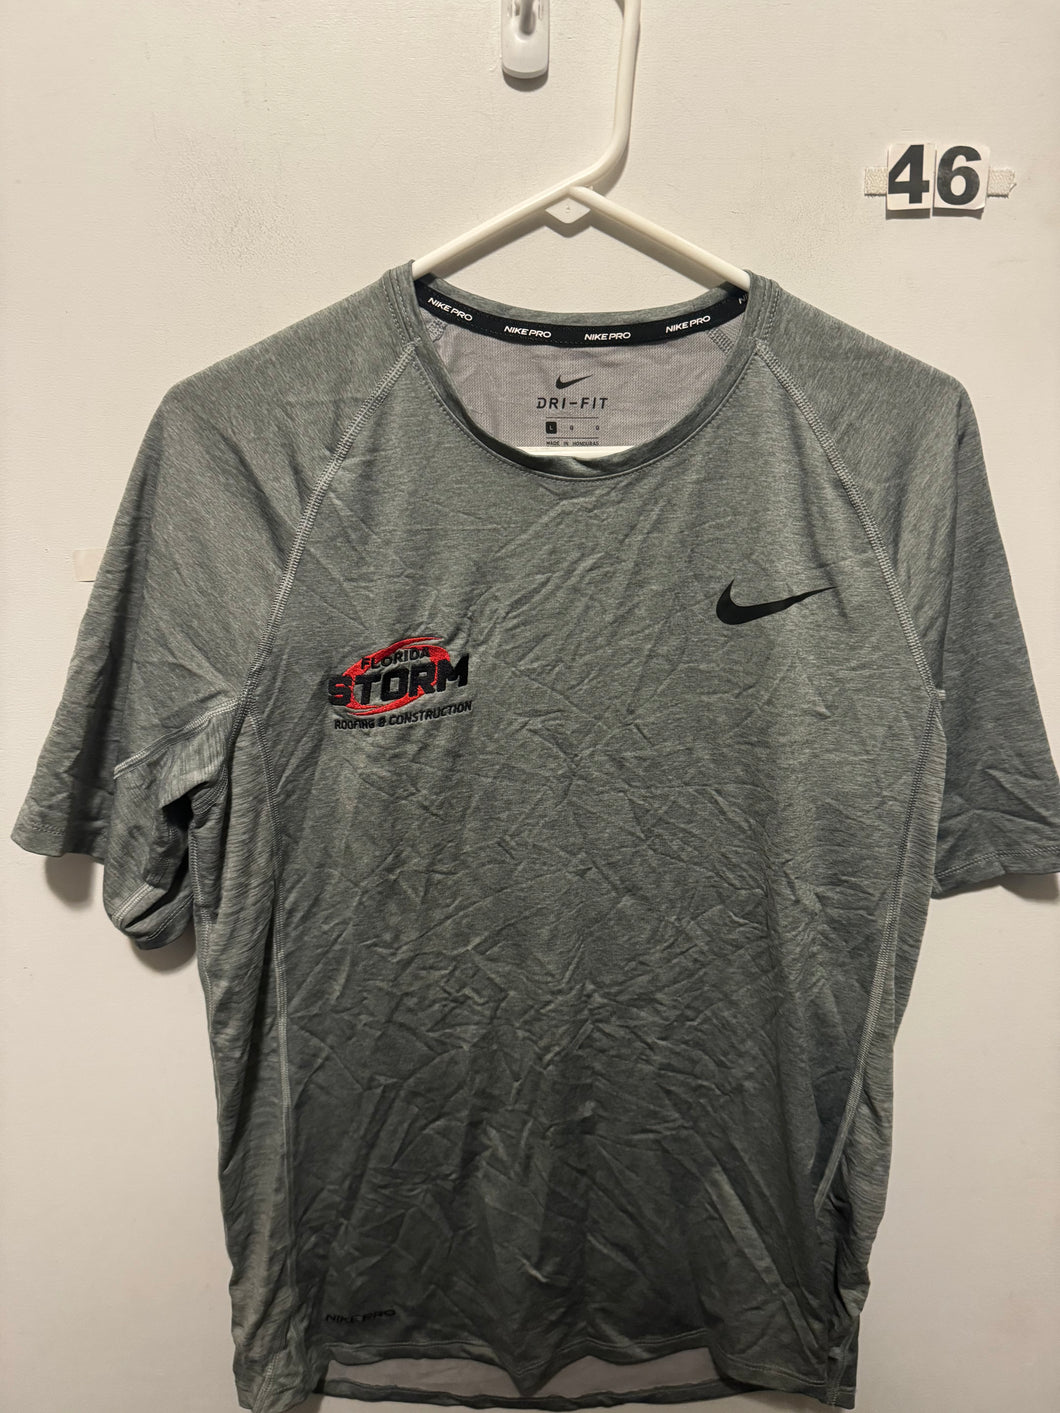 Men’s L Nike Shirt